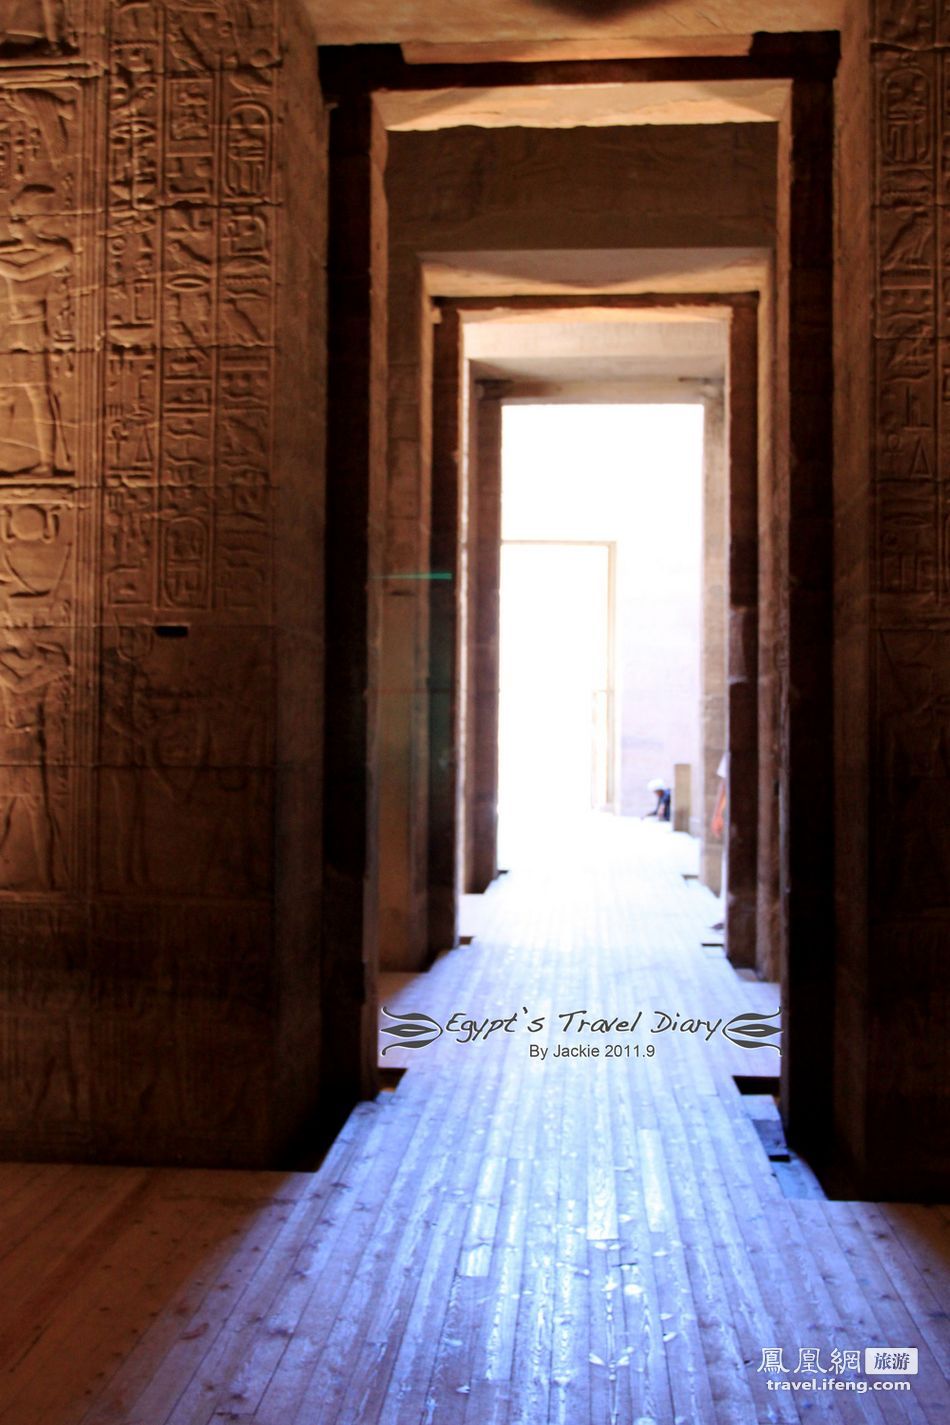 找寻古埃及影子 三峡建成前第一阿斯旺大坝